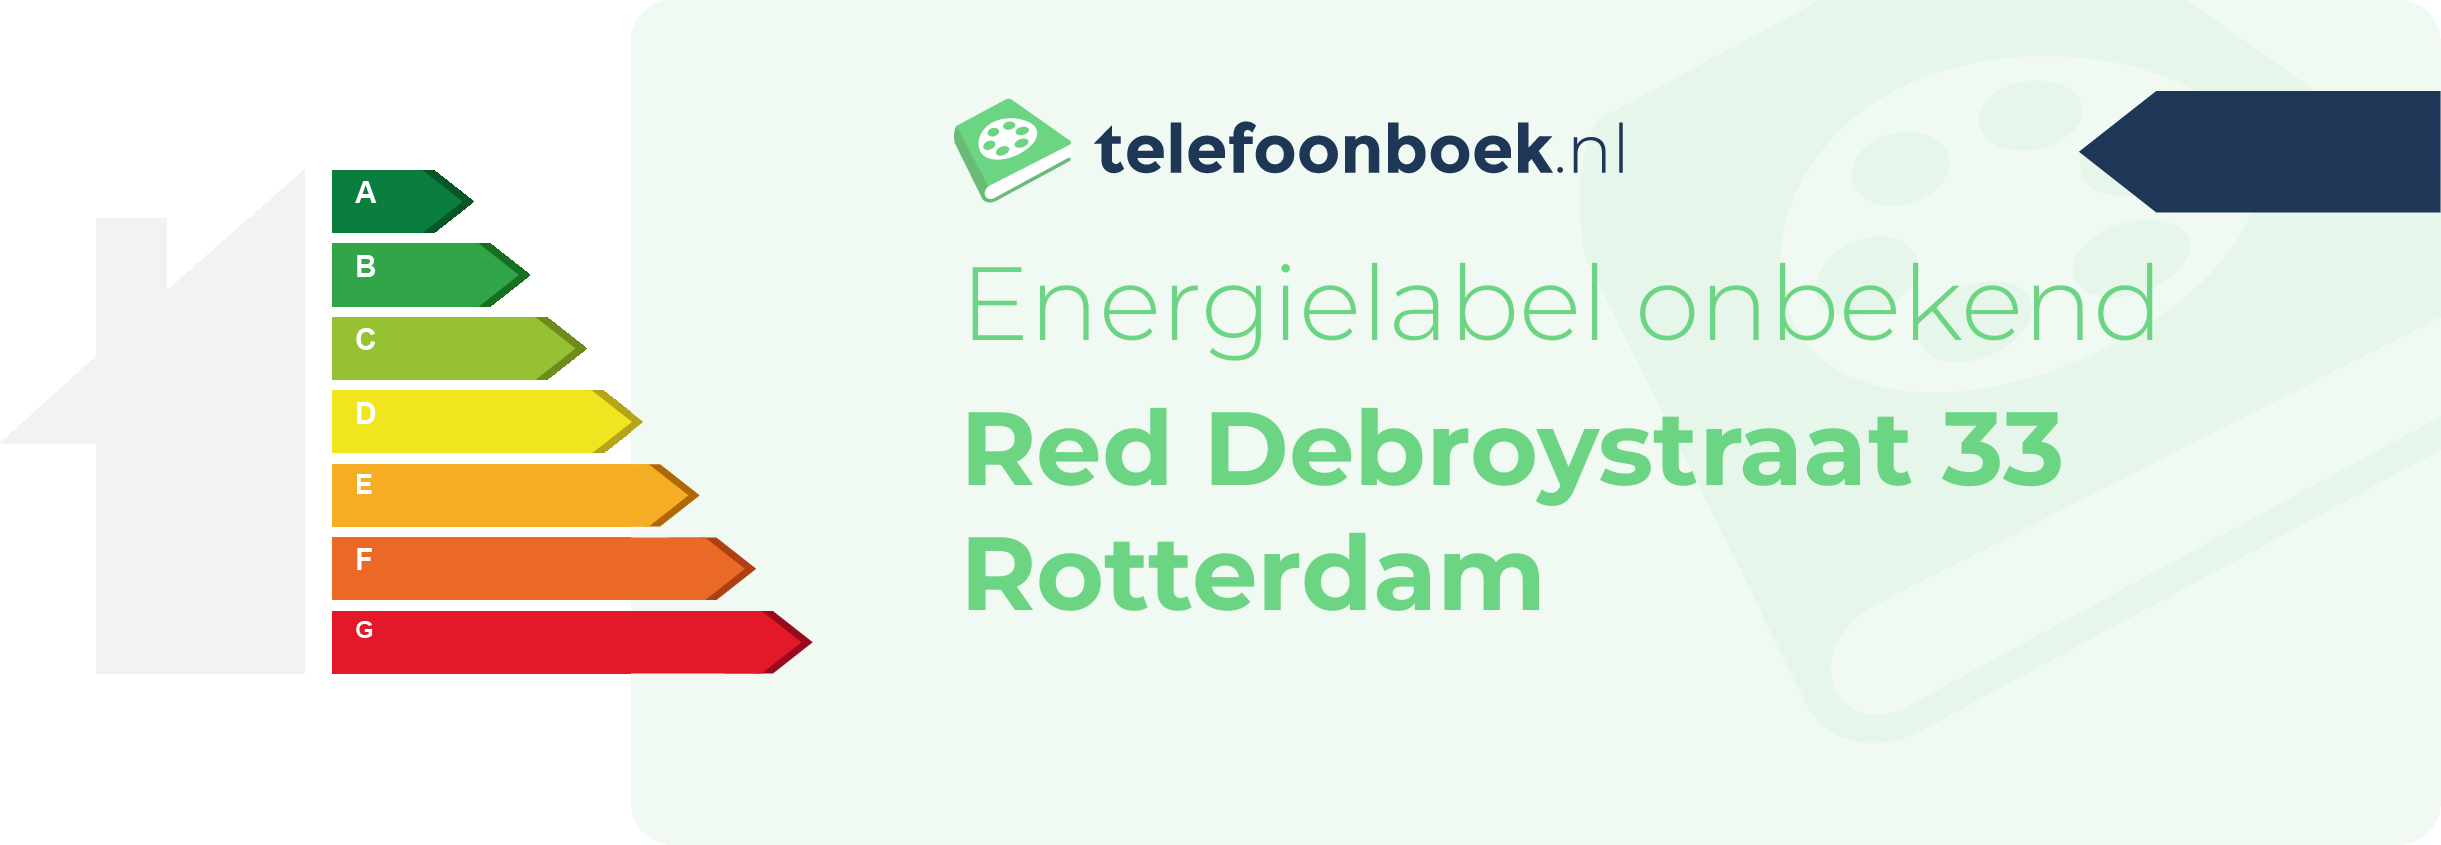 Energielabel Red Debroystraat 33 Rotterdam